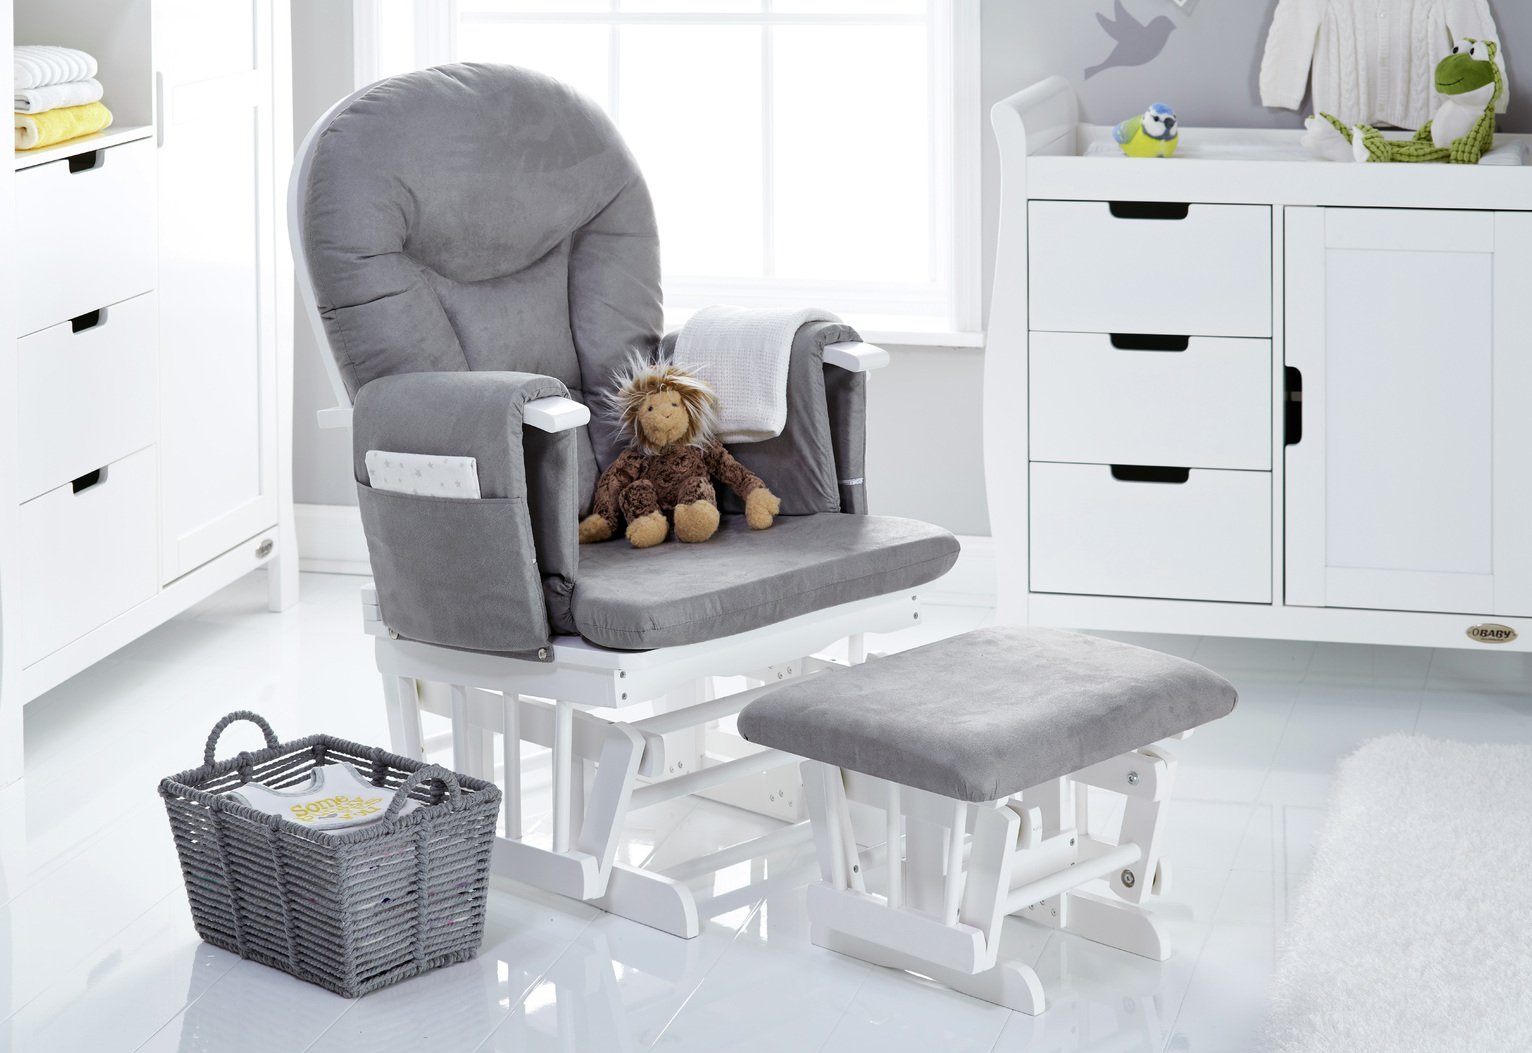 grey glider chair